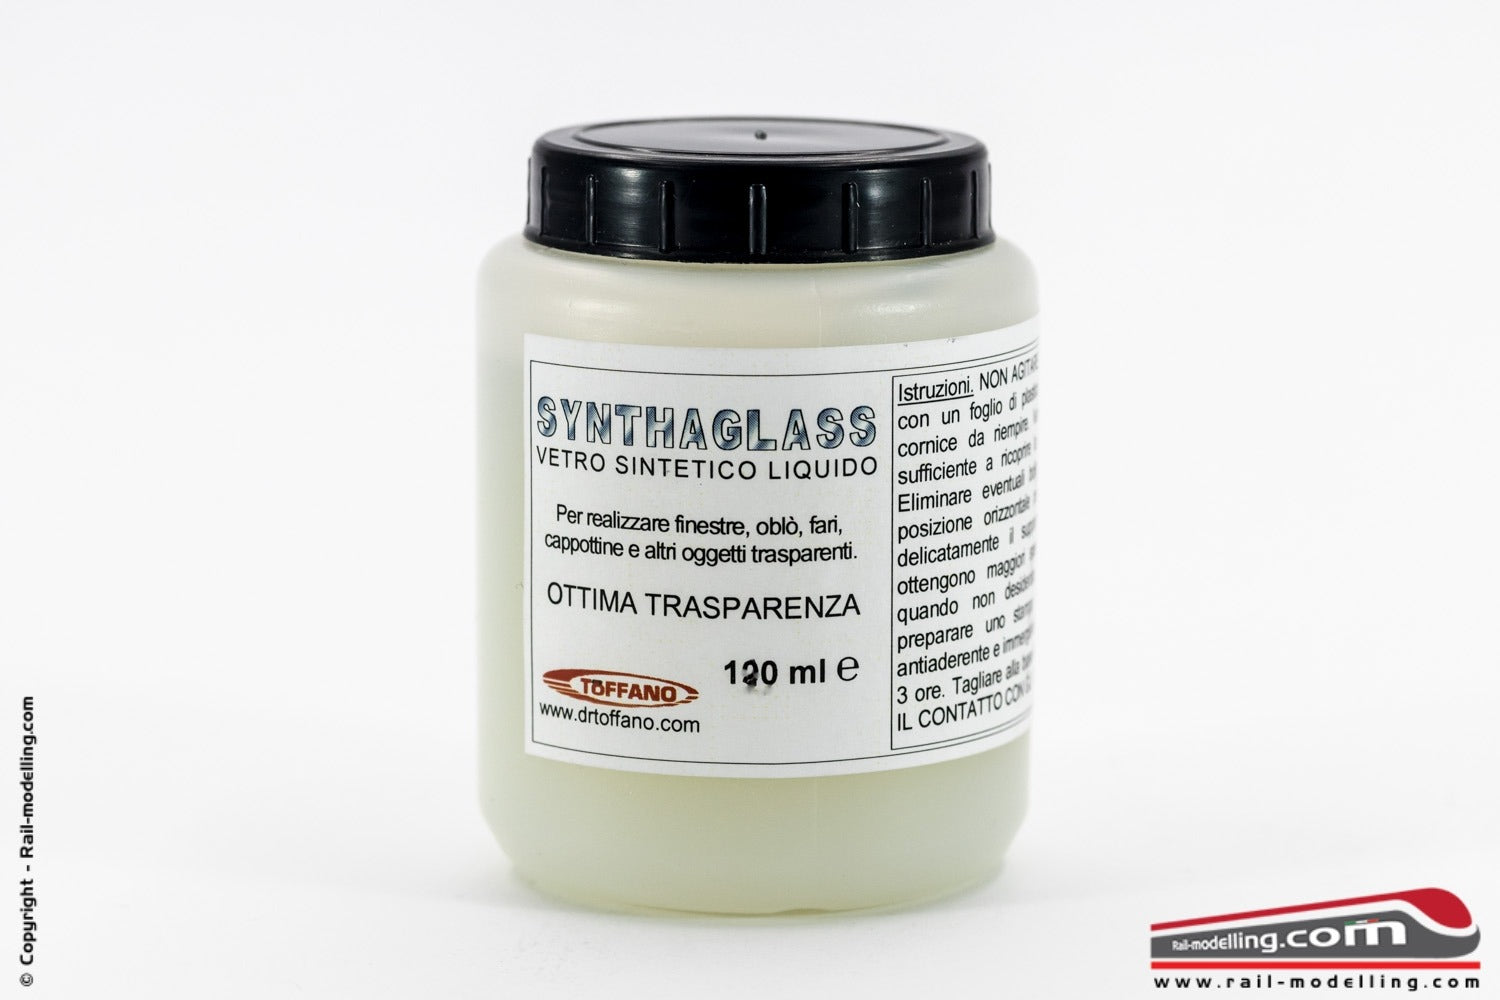 DR TOFFANO - SYNTHAGLASS vetro sintentico liquido 120 ml